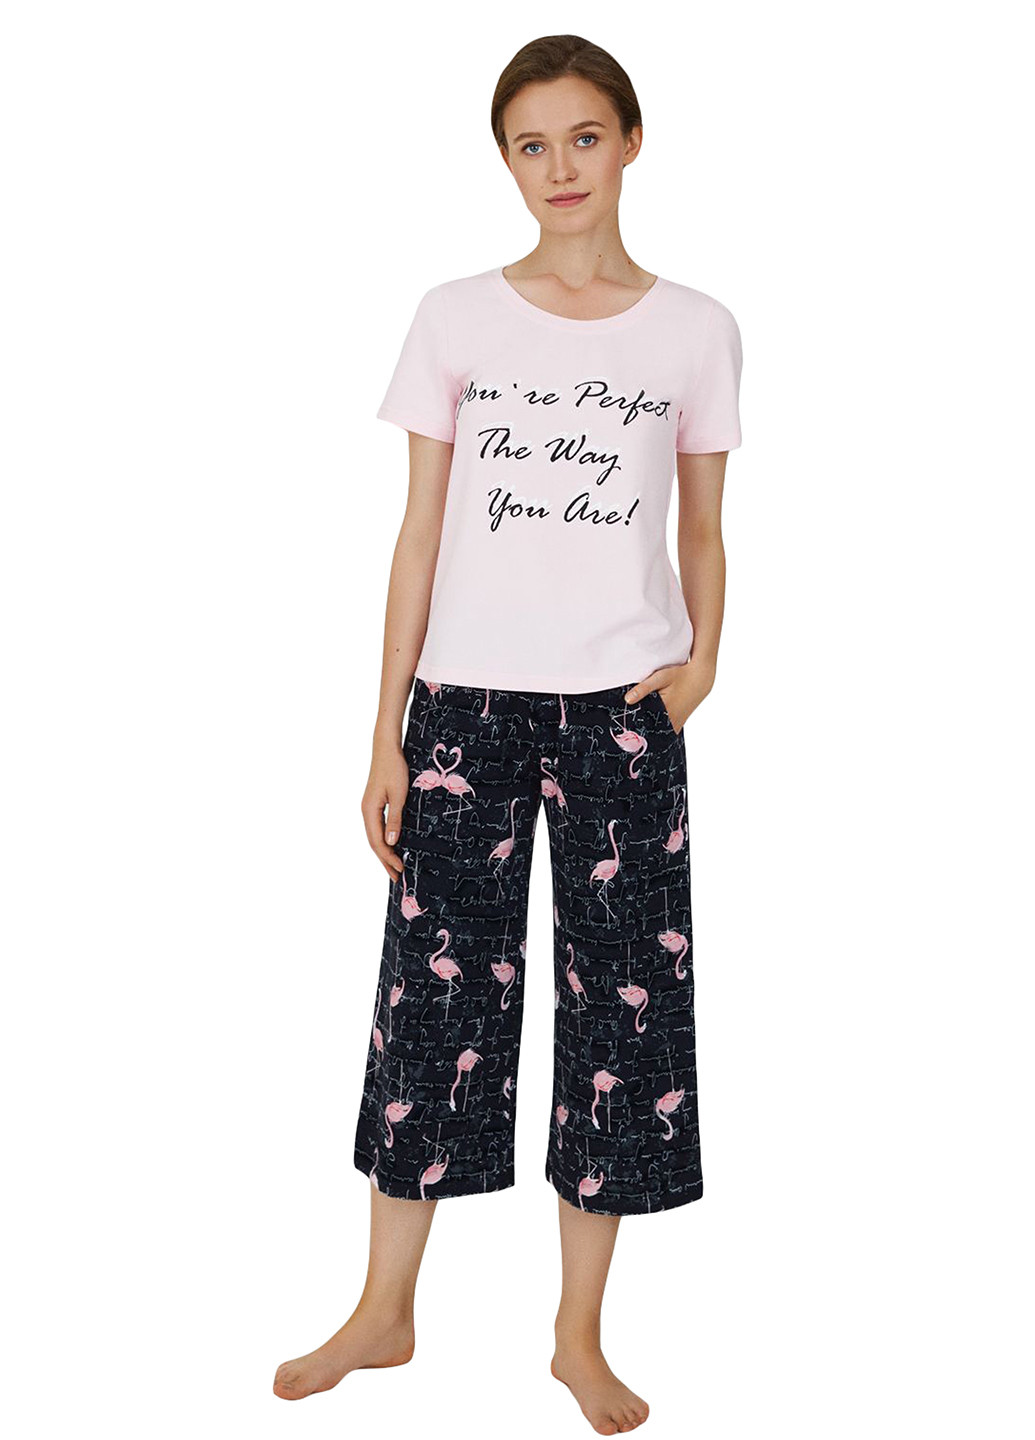 Комбинированная всесезон пижама (футболка, капри) футболка + капри Ellen